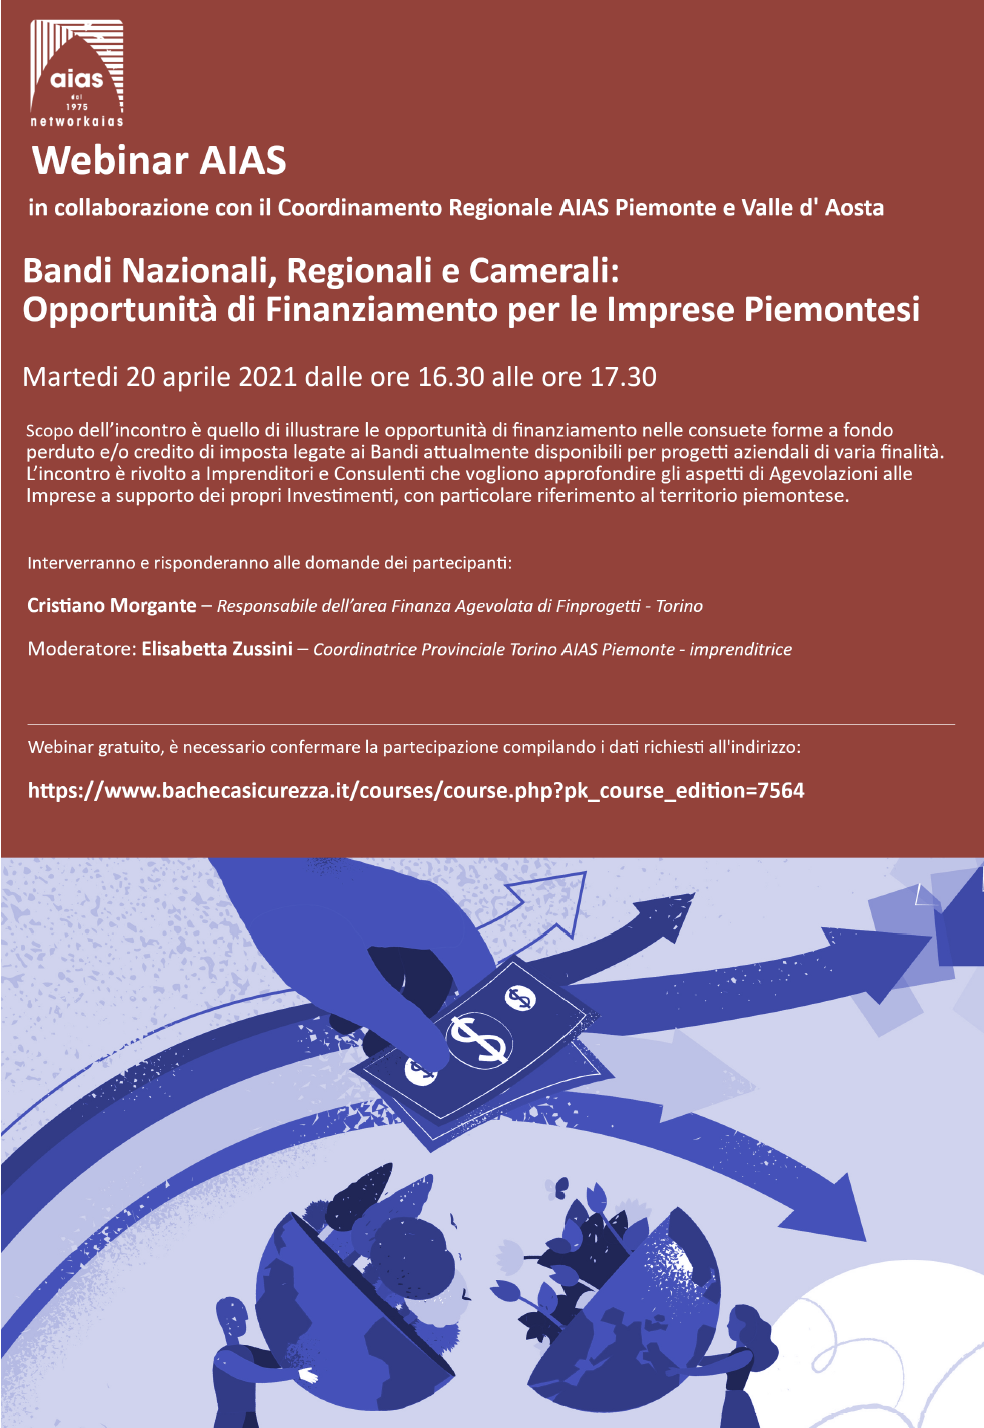 Webinar gratuito: Bandi Nazionali, Regionali e Camerali: Opportunità di Finanziamento per le Imprese Piemontesi